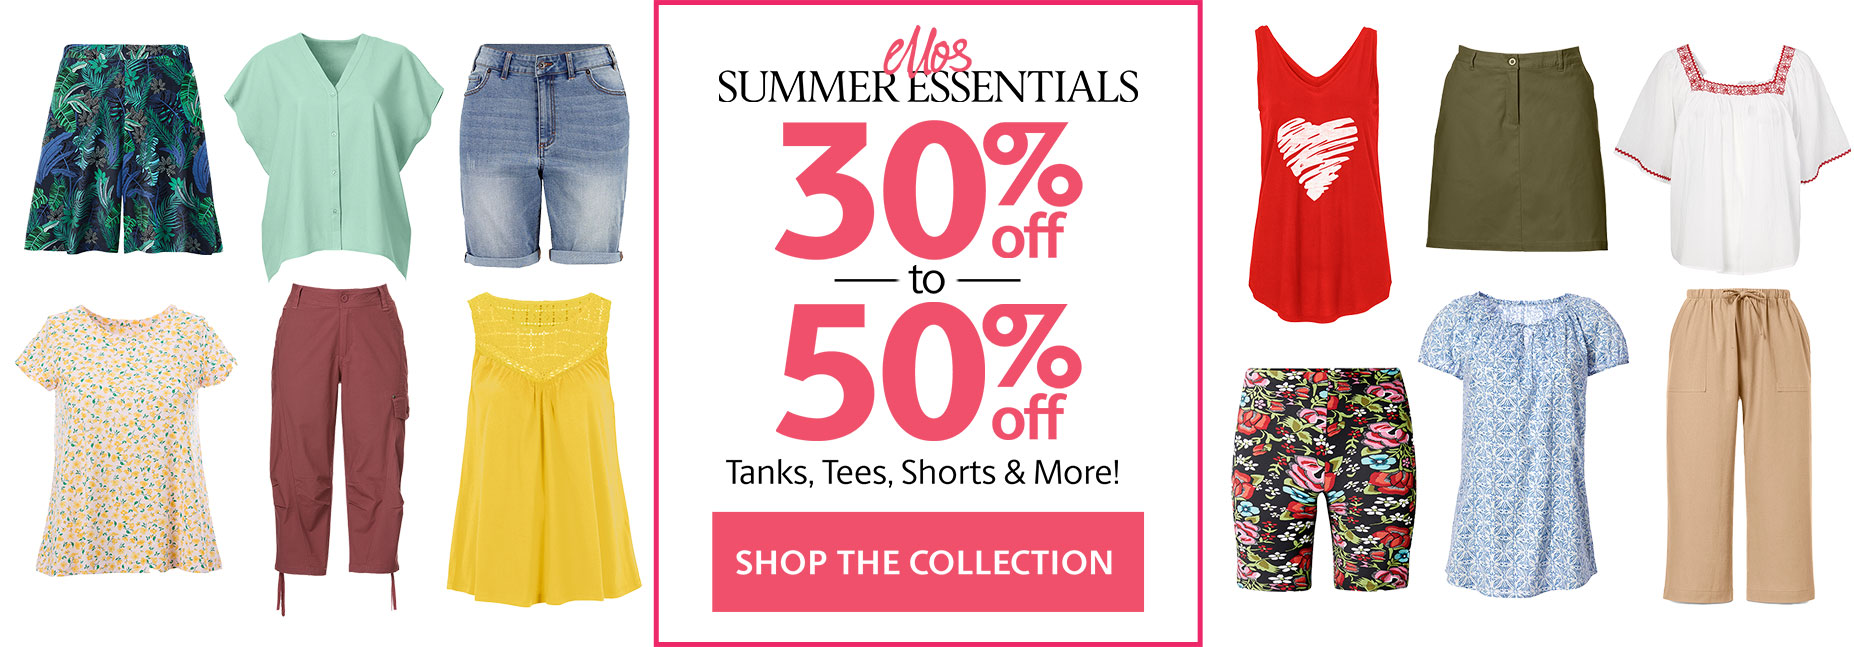 Summer Essentials Ellos - 30 - 50%Off Tanks Tees & More